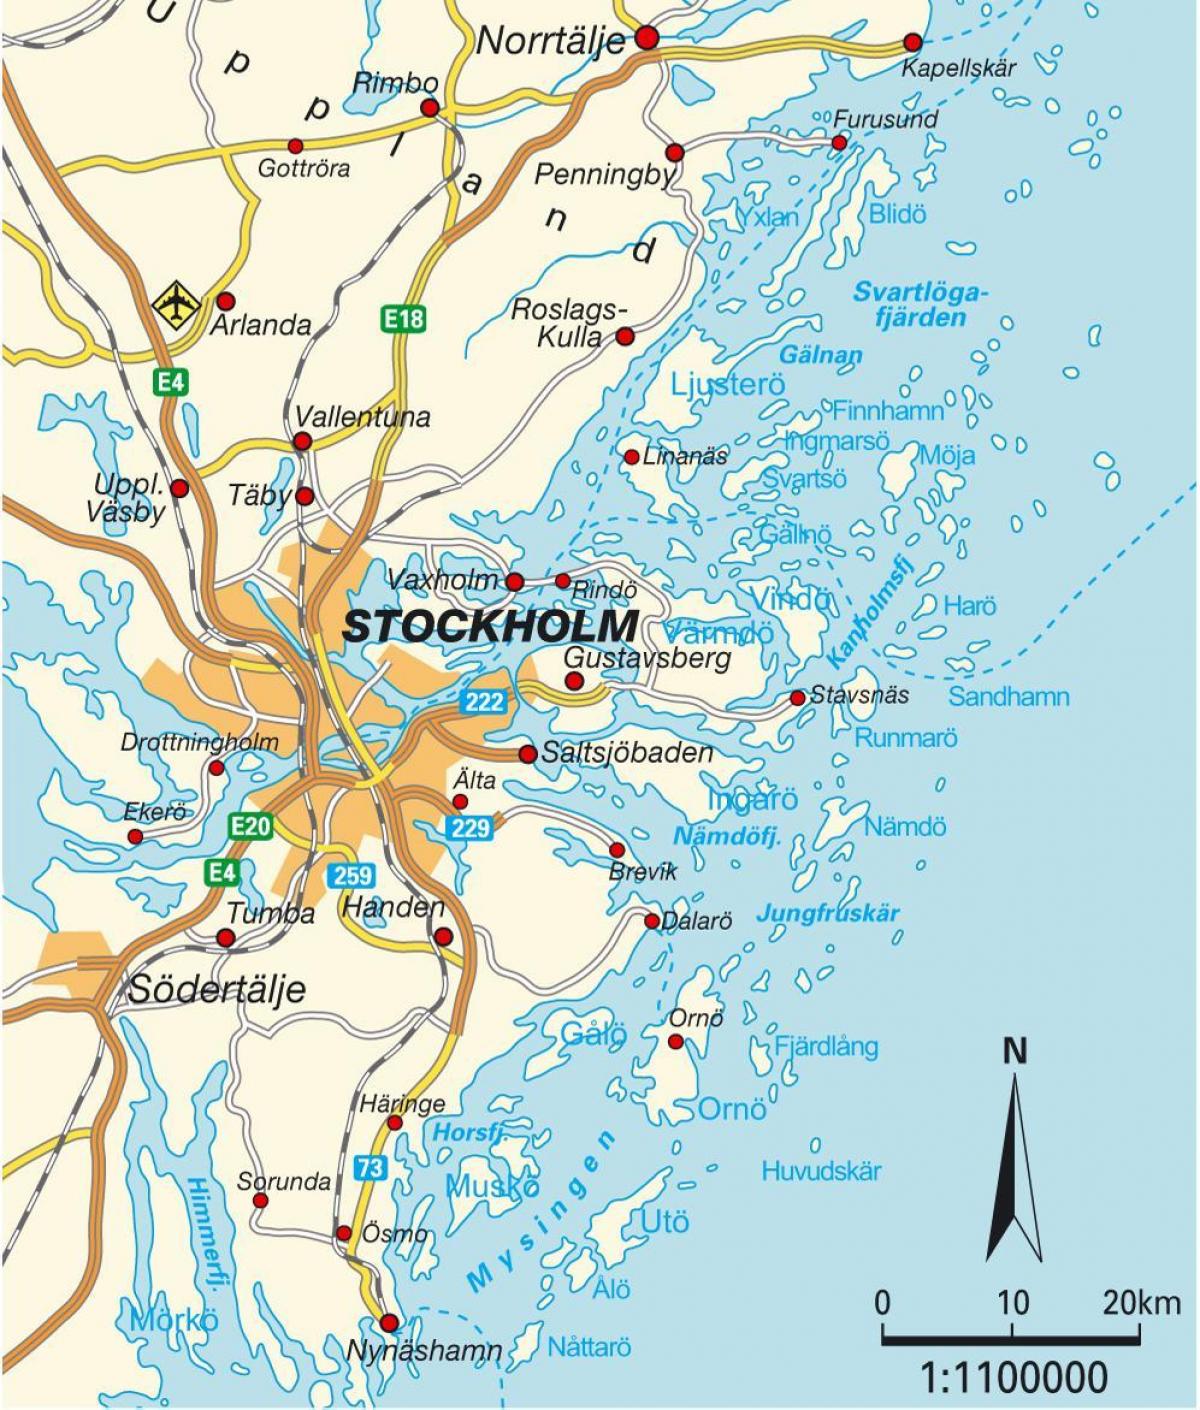 Estocolmo, en mapa